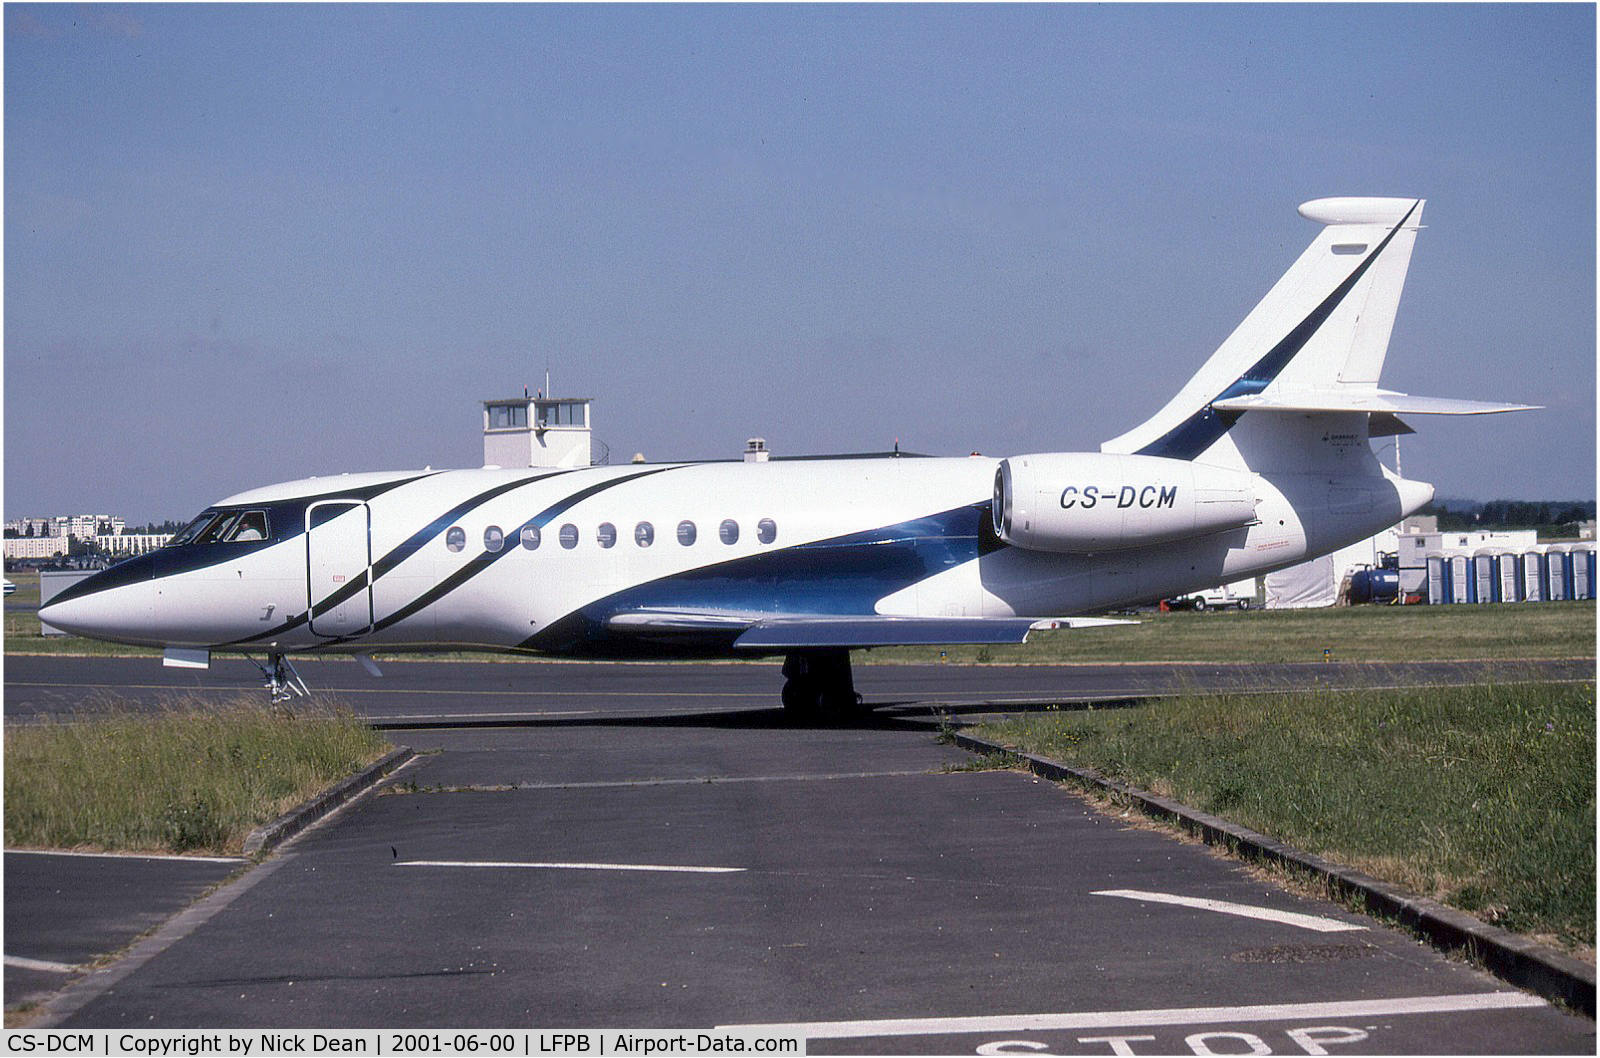 CS-DCM, 1997 Dassault Falcon 2000 C/N 46, Paris Le Bourget (stunning scheme)